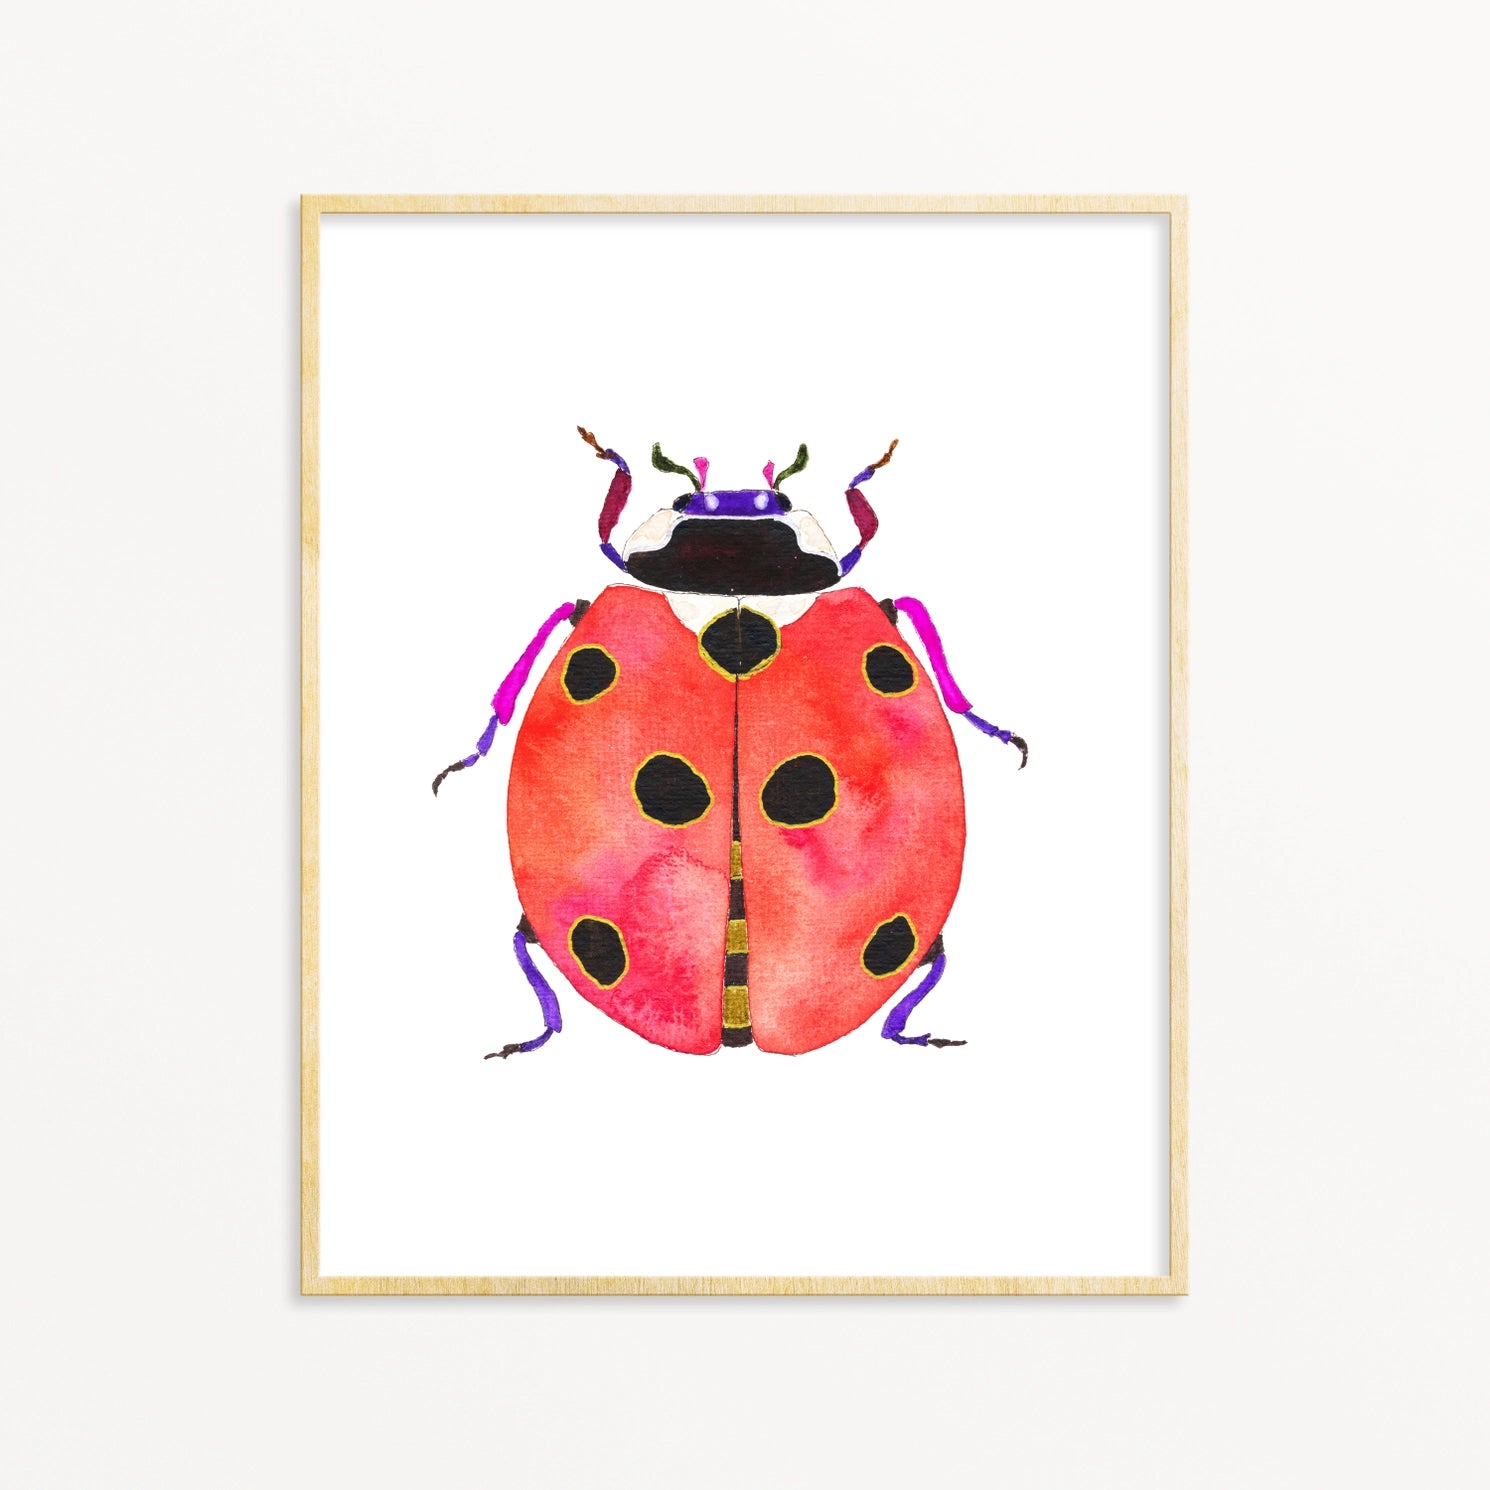 Watercolor Beetle Print